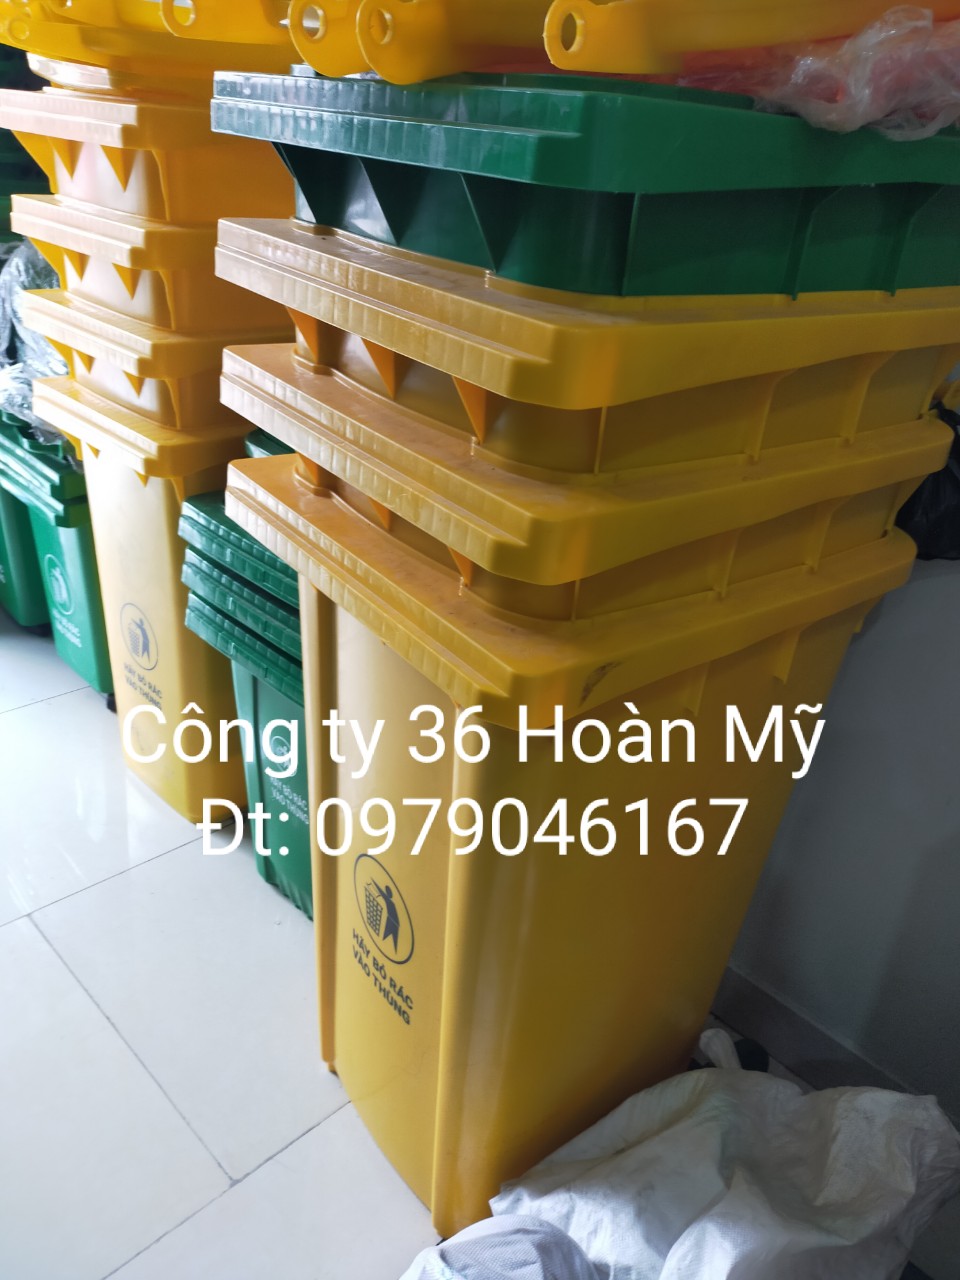 Thùng rác 240l tại Thanh Hóa-0979046167